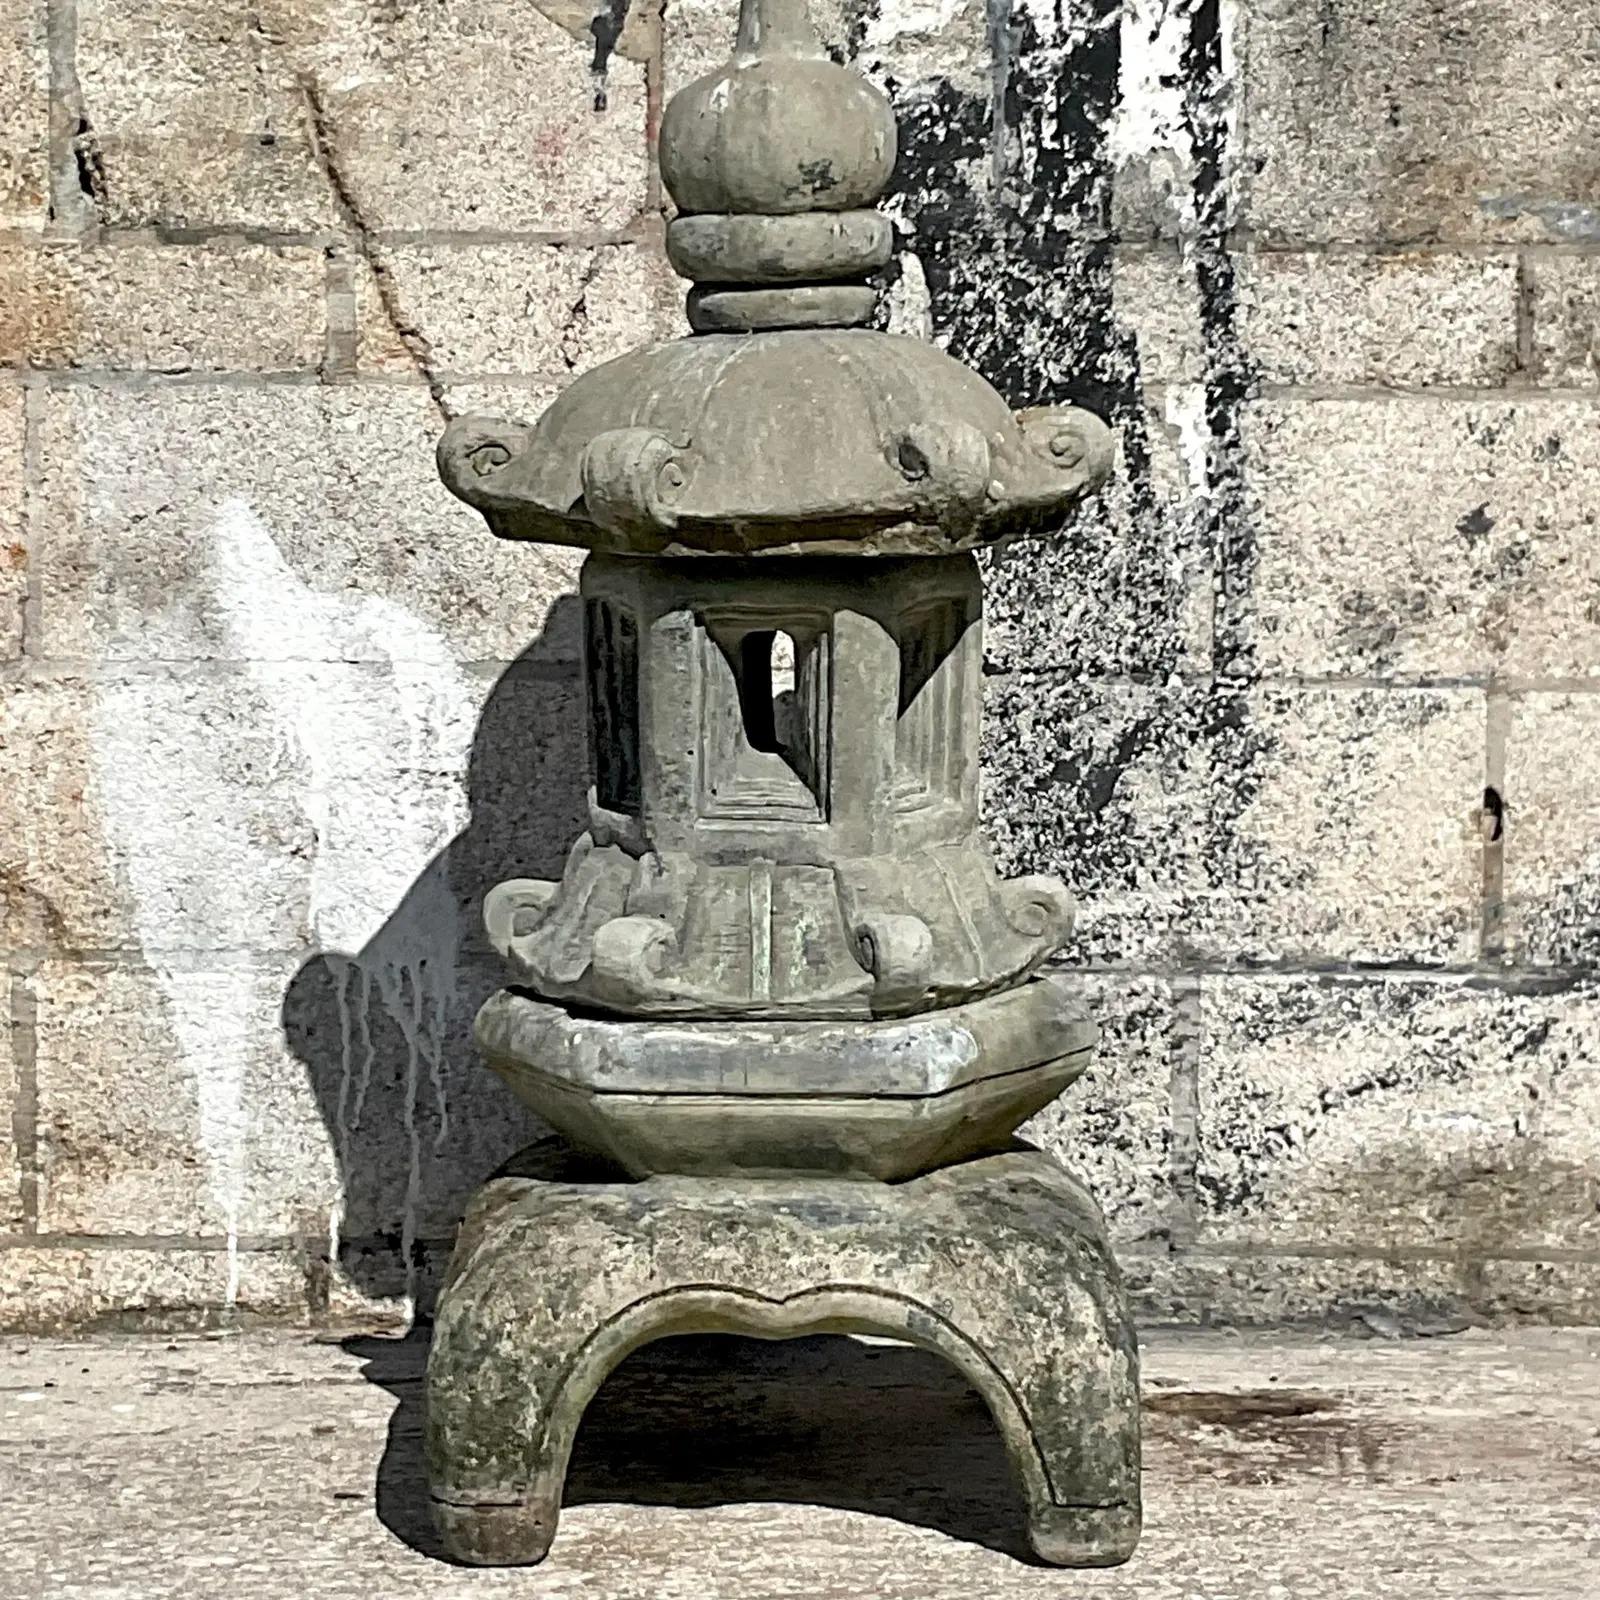 Fabuleuse pagode vintage en ciment moulé. Belle patine du temps sur cette superbe sculpture d'extérieur. Se décompose en pièces empilables pour faciliter le déplacement. Acquis d'une succession de Palm Beach